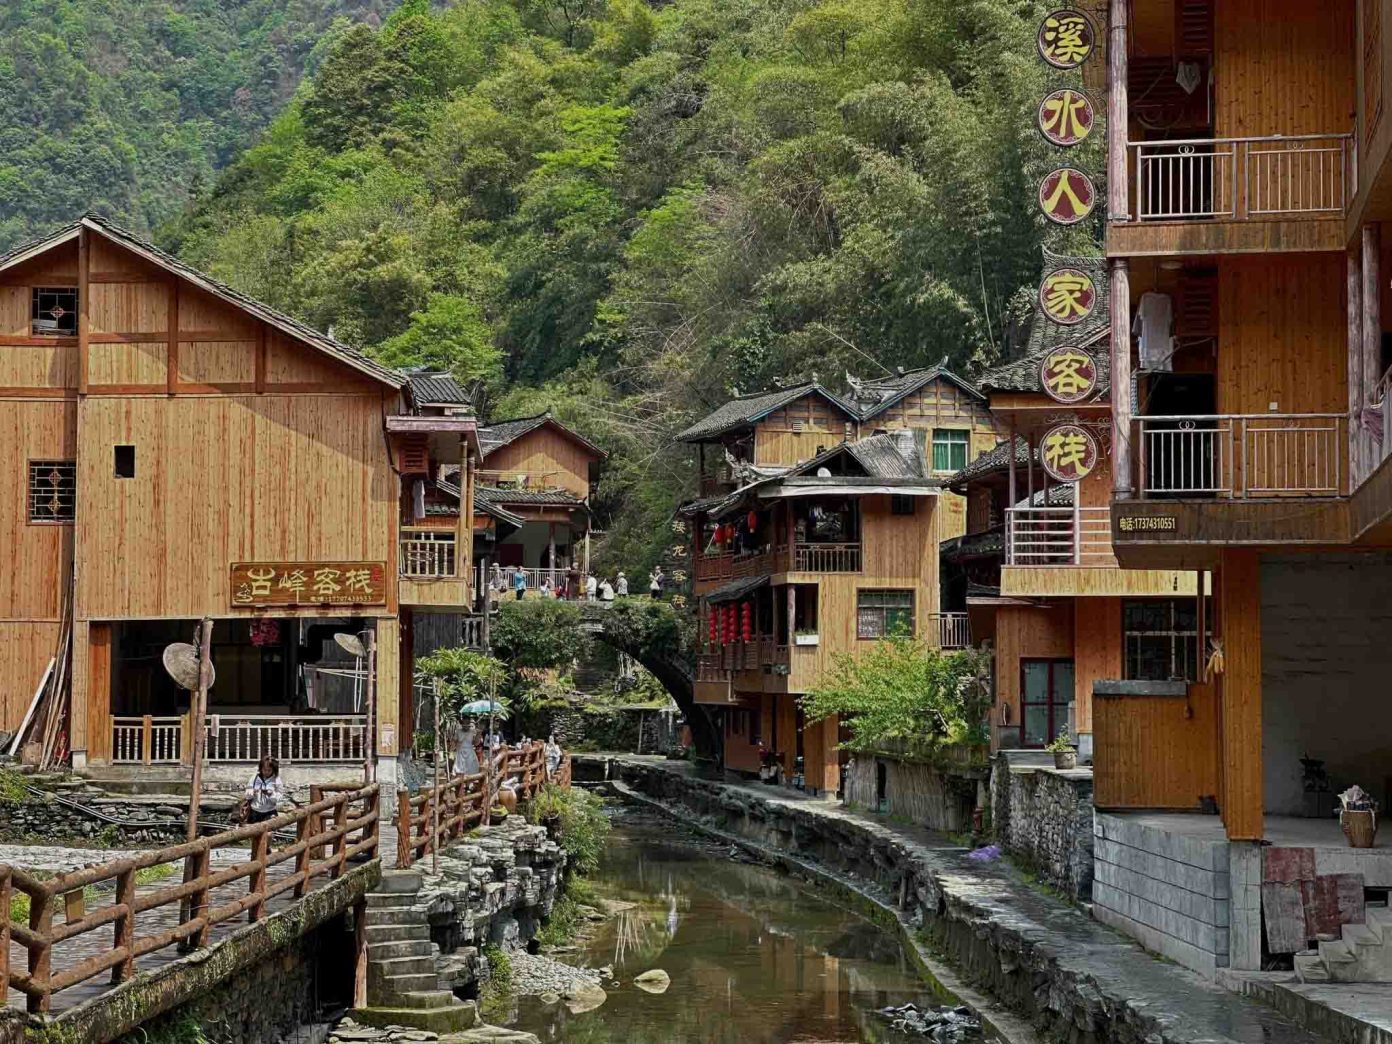 Thăm làng cổ Đức Hãng Miêu Trại nơi người Miêu ở Trung Quốc sinh sống